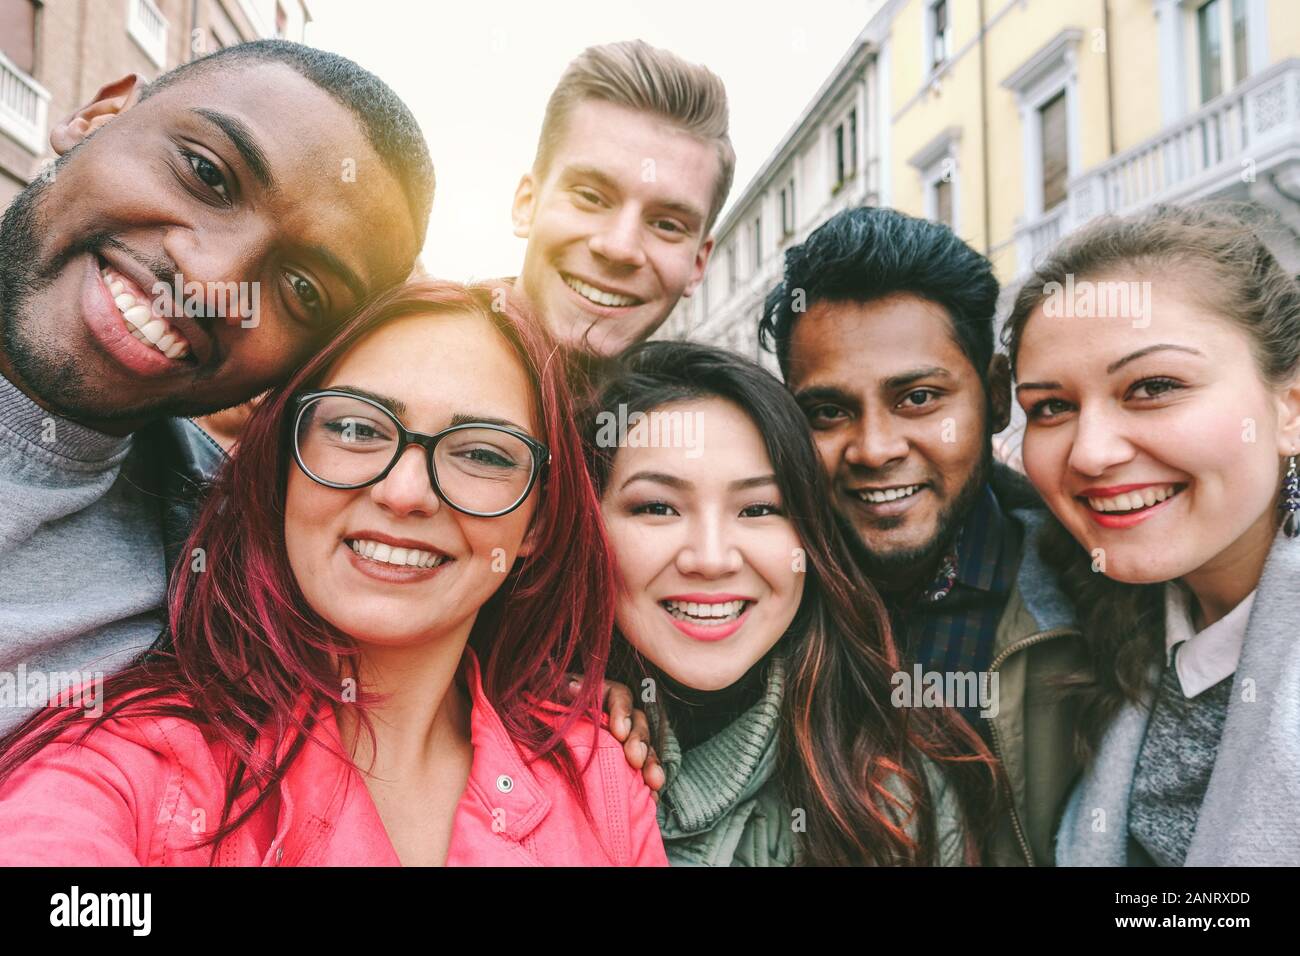 Fröhliche Freunde aus verschiedenen Kulturen und Rassen bringen selfie mit Hintergrundbeleuchtung - Jugend- und Freundschaftskonzept mit gemeinsam lustigen Jugendlichen - Stockfoto